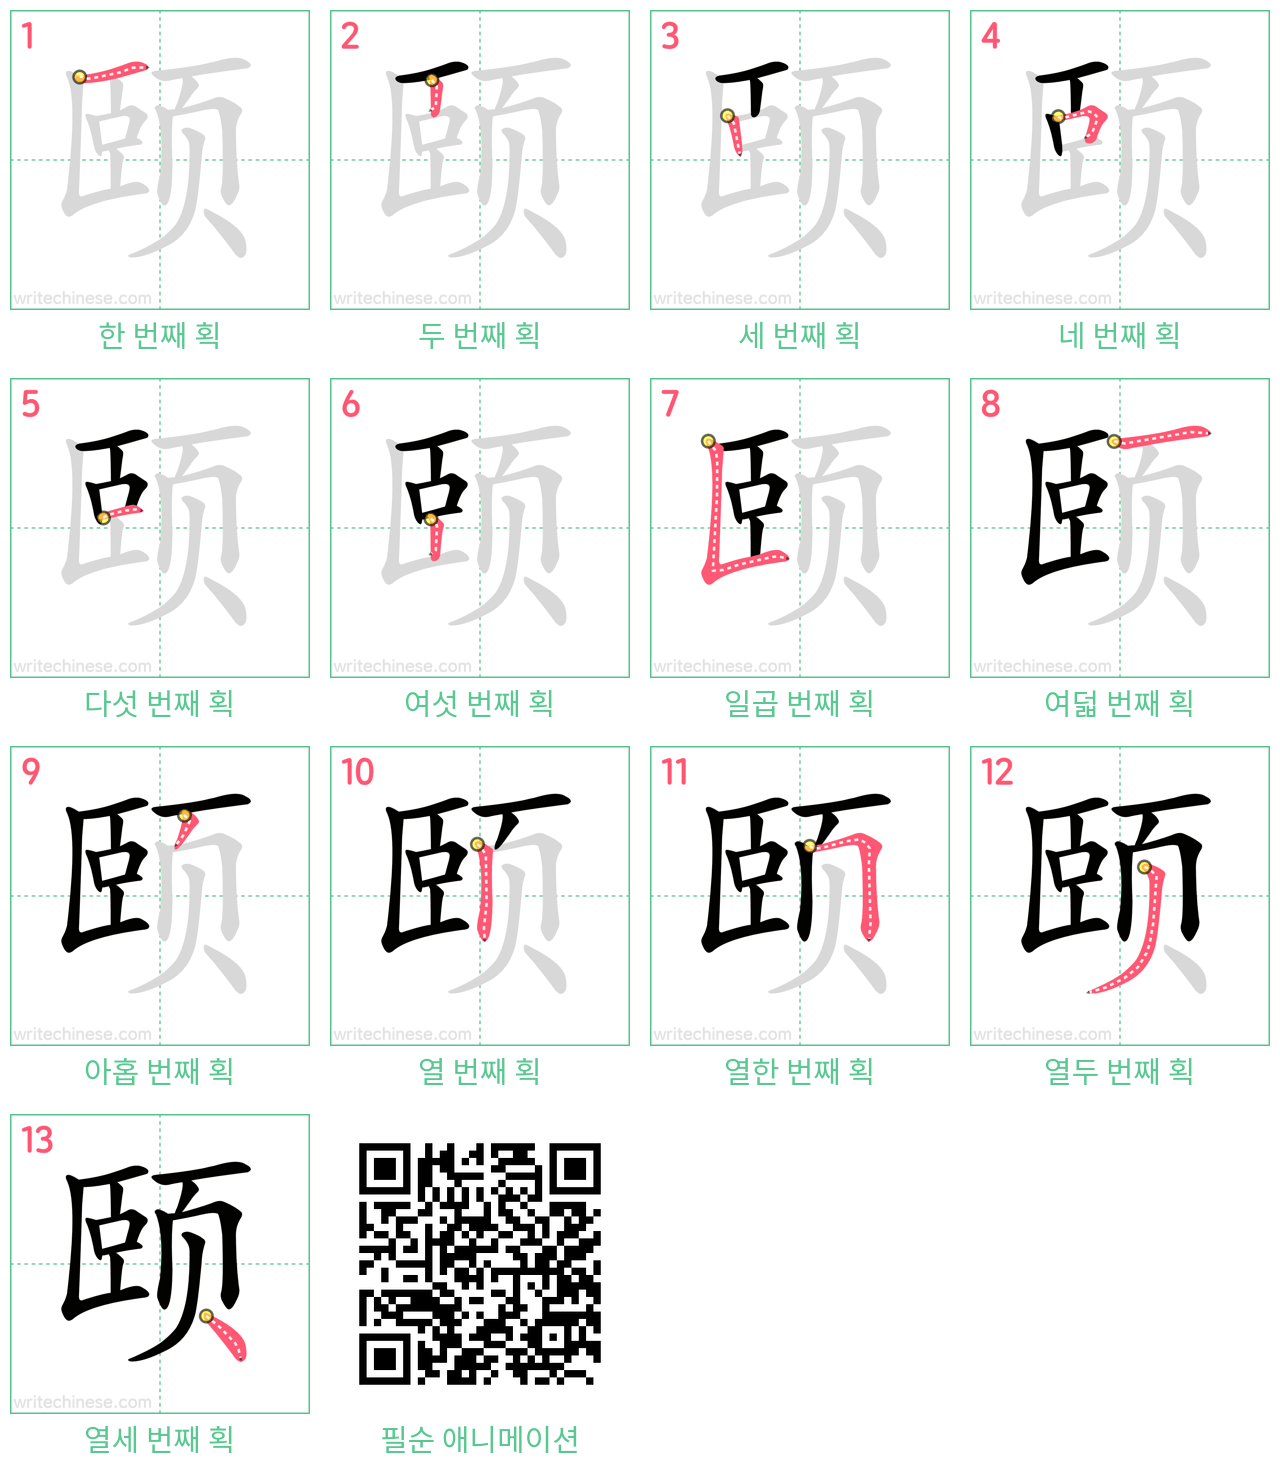 颐 step-by-step stroke order diagrams